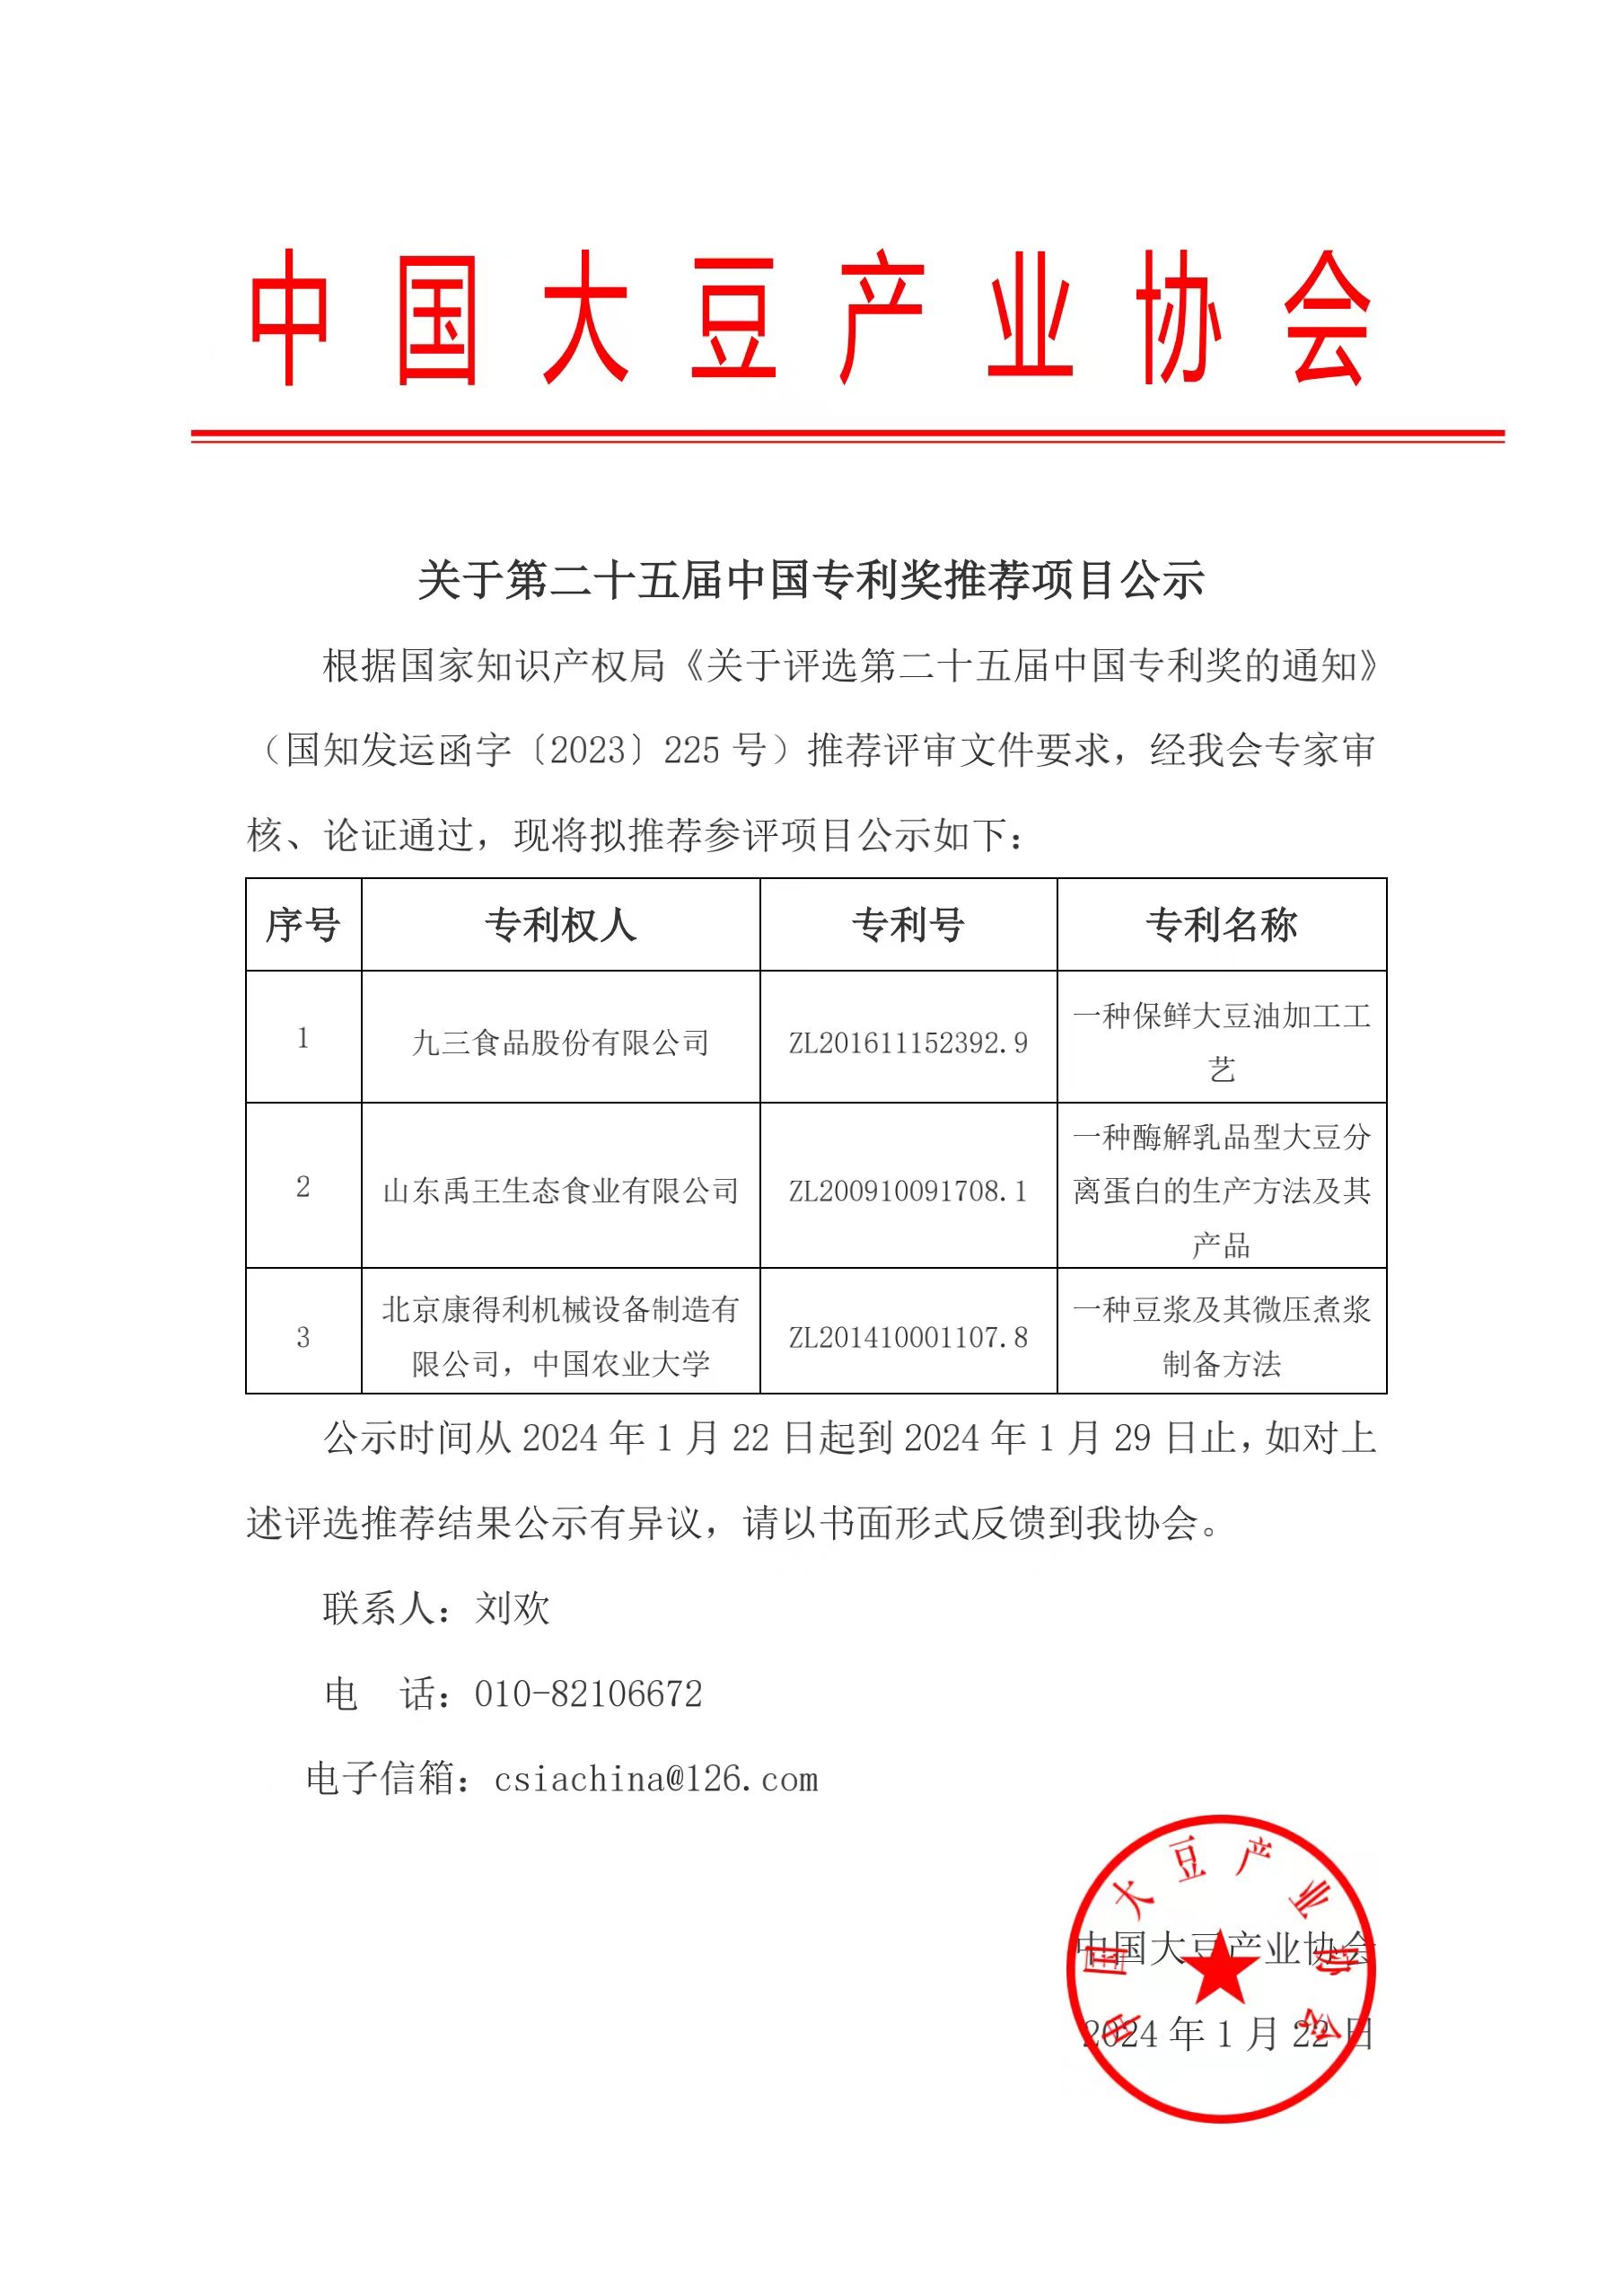 关于第二十五届中国专利奖推荐项目公示.jpg